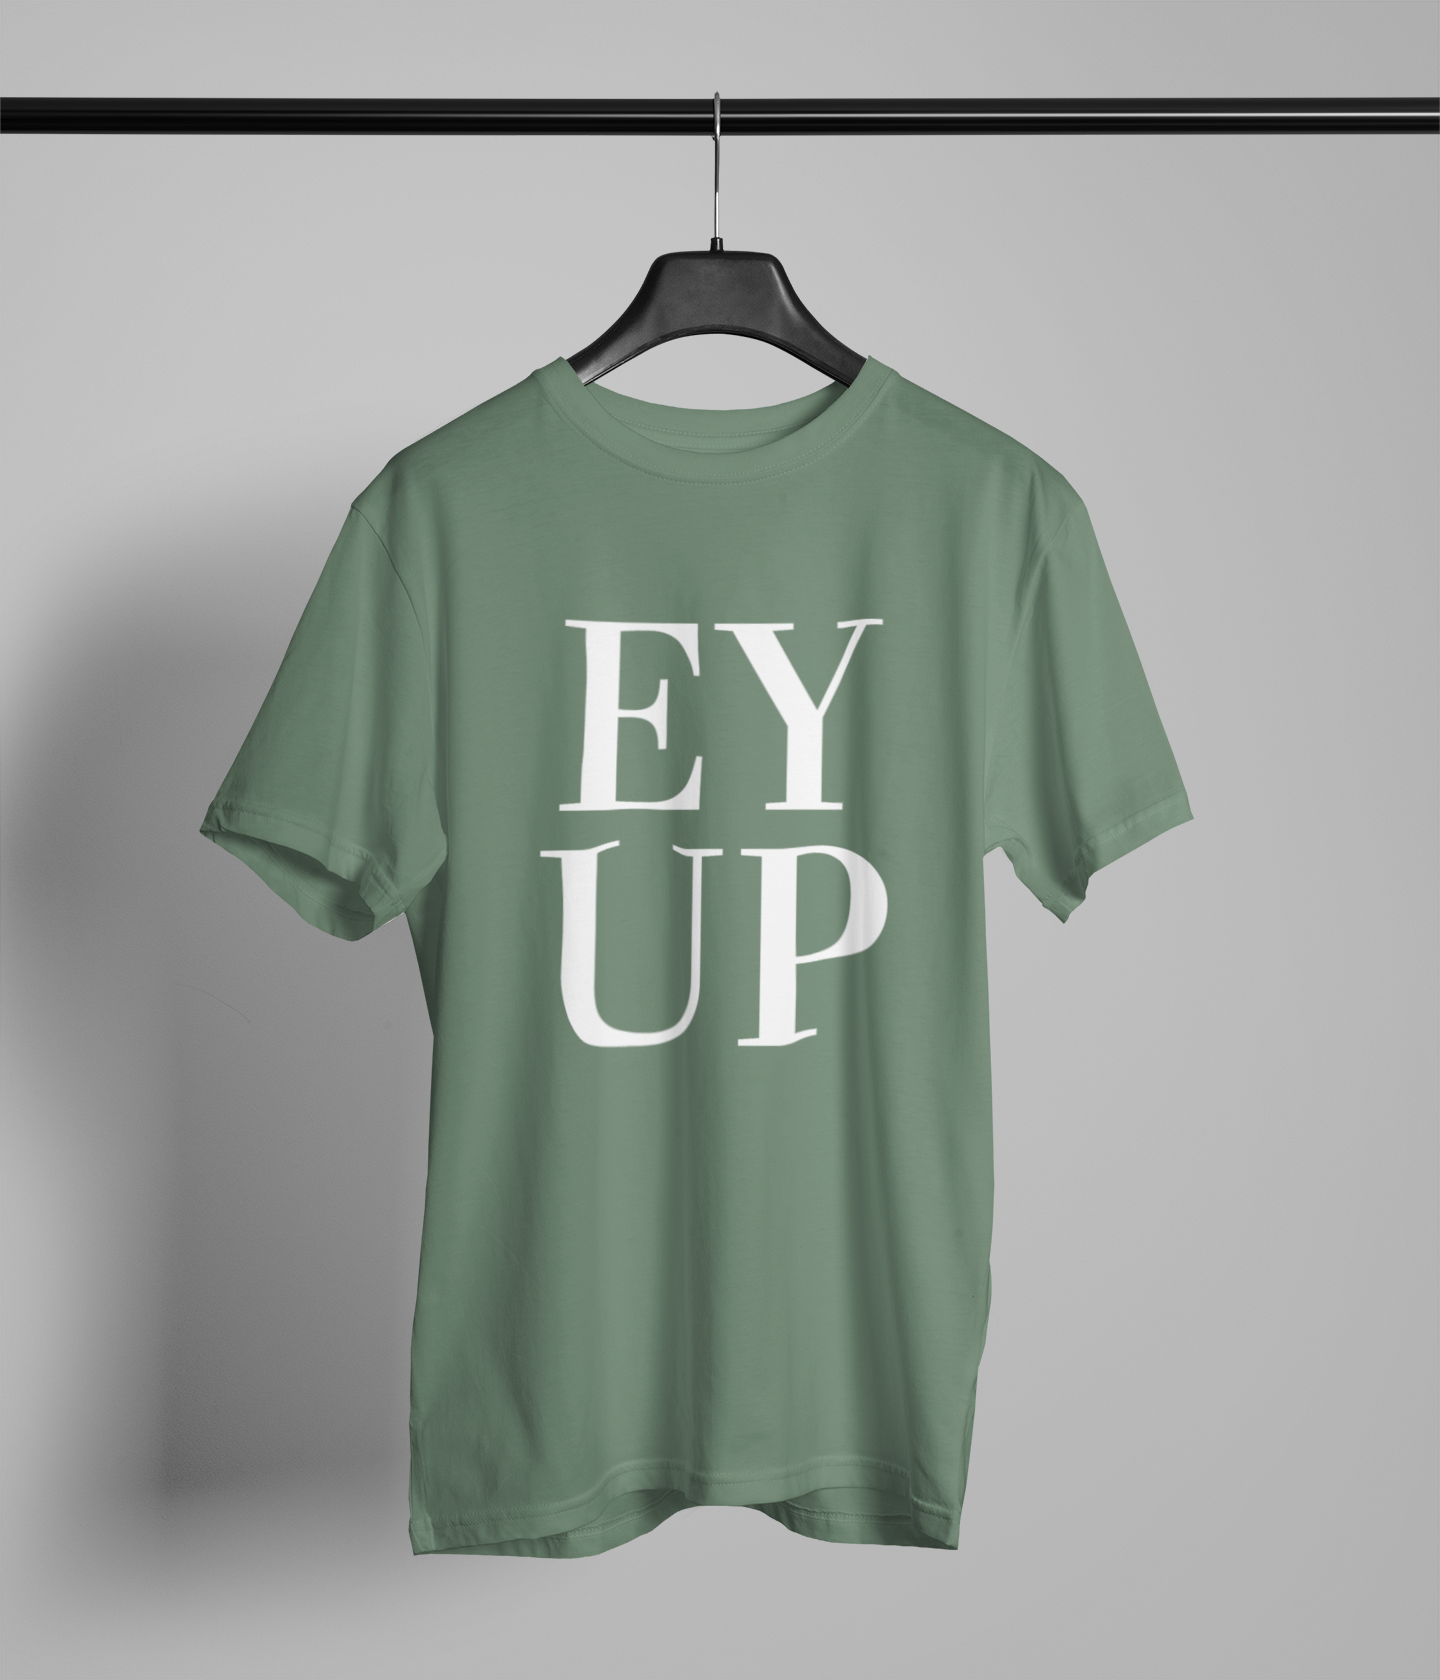 EYUP Northern Slang T-Shirt Unisex